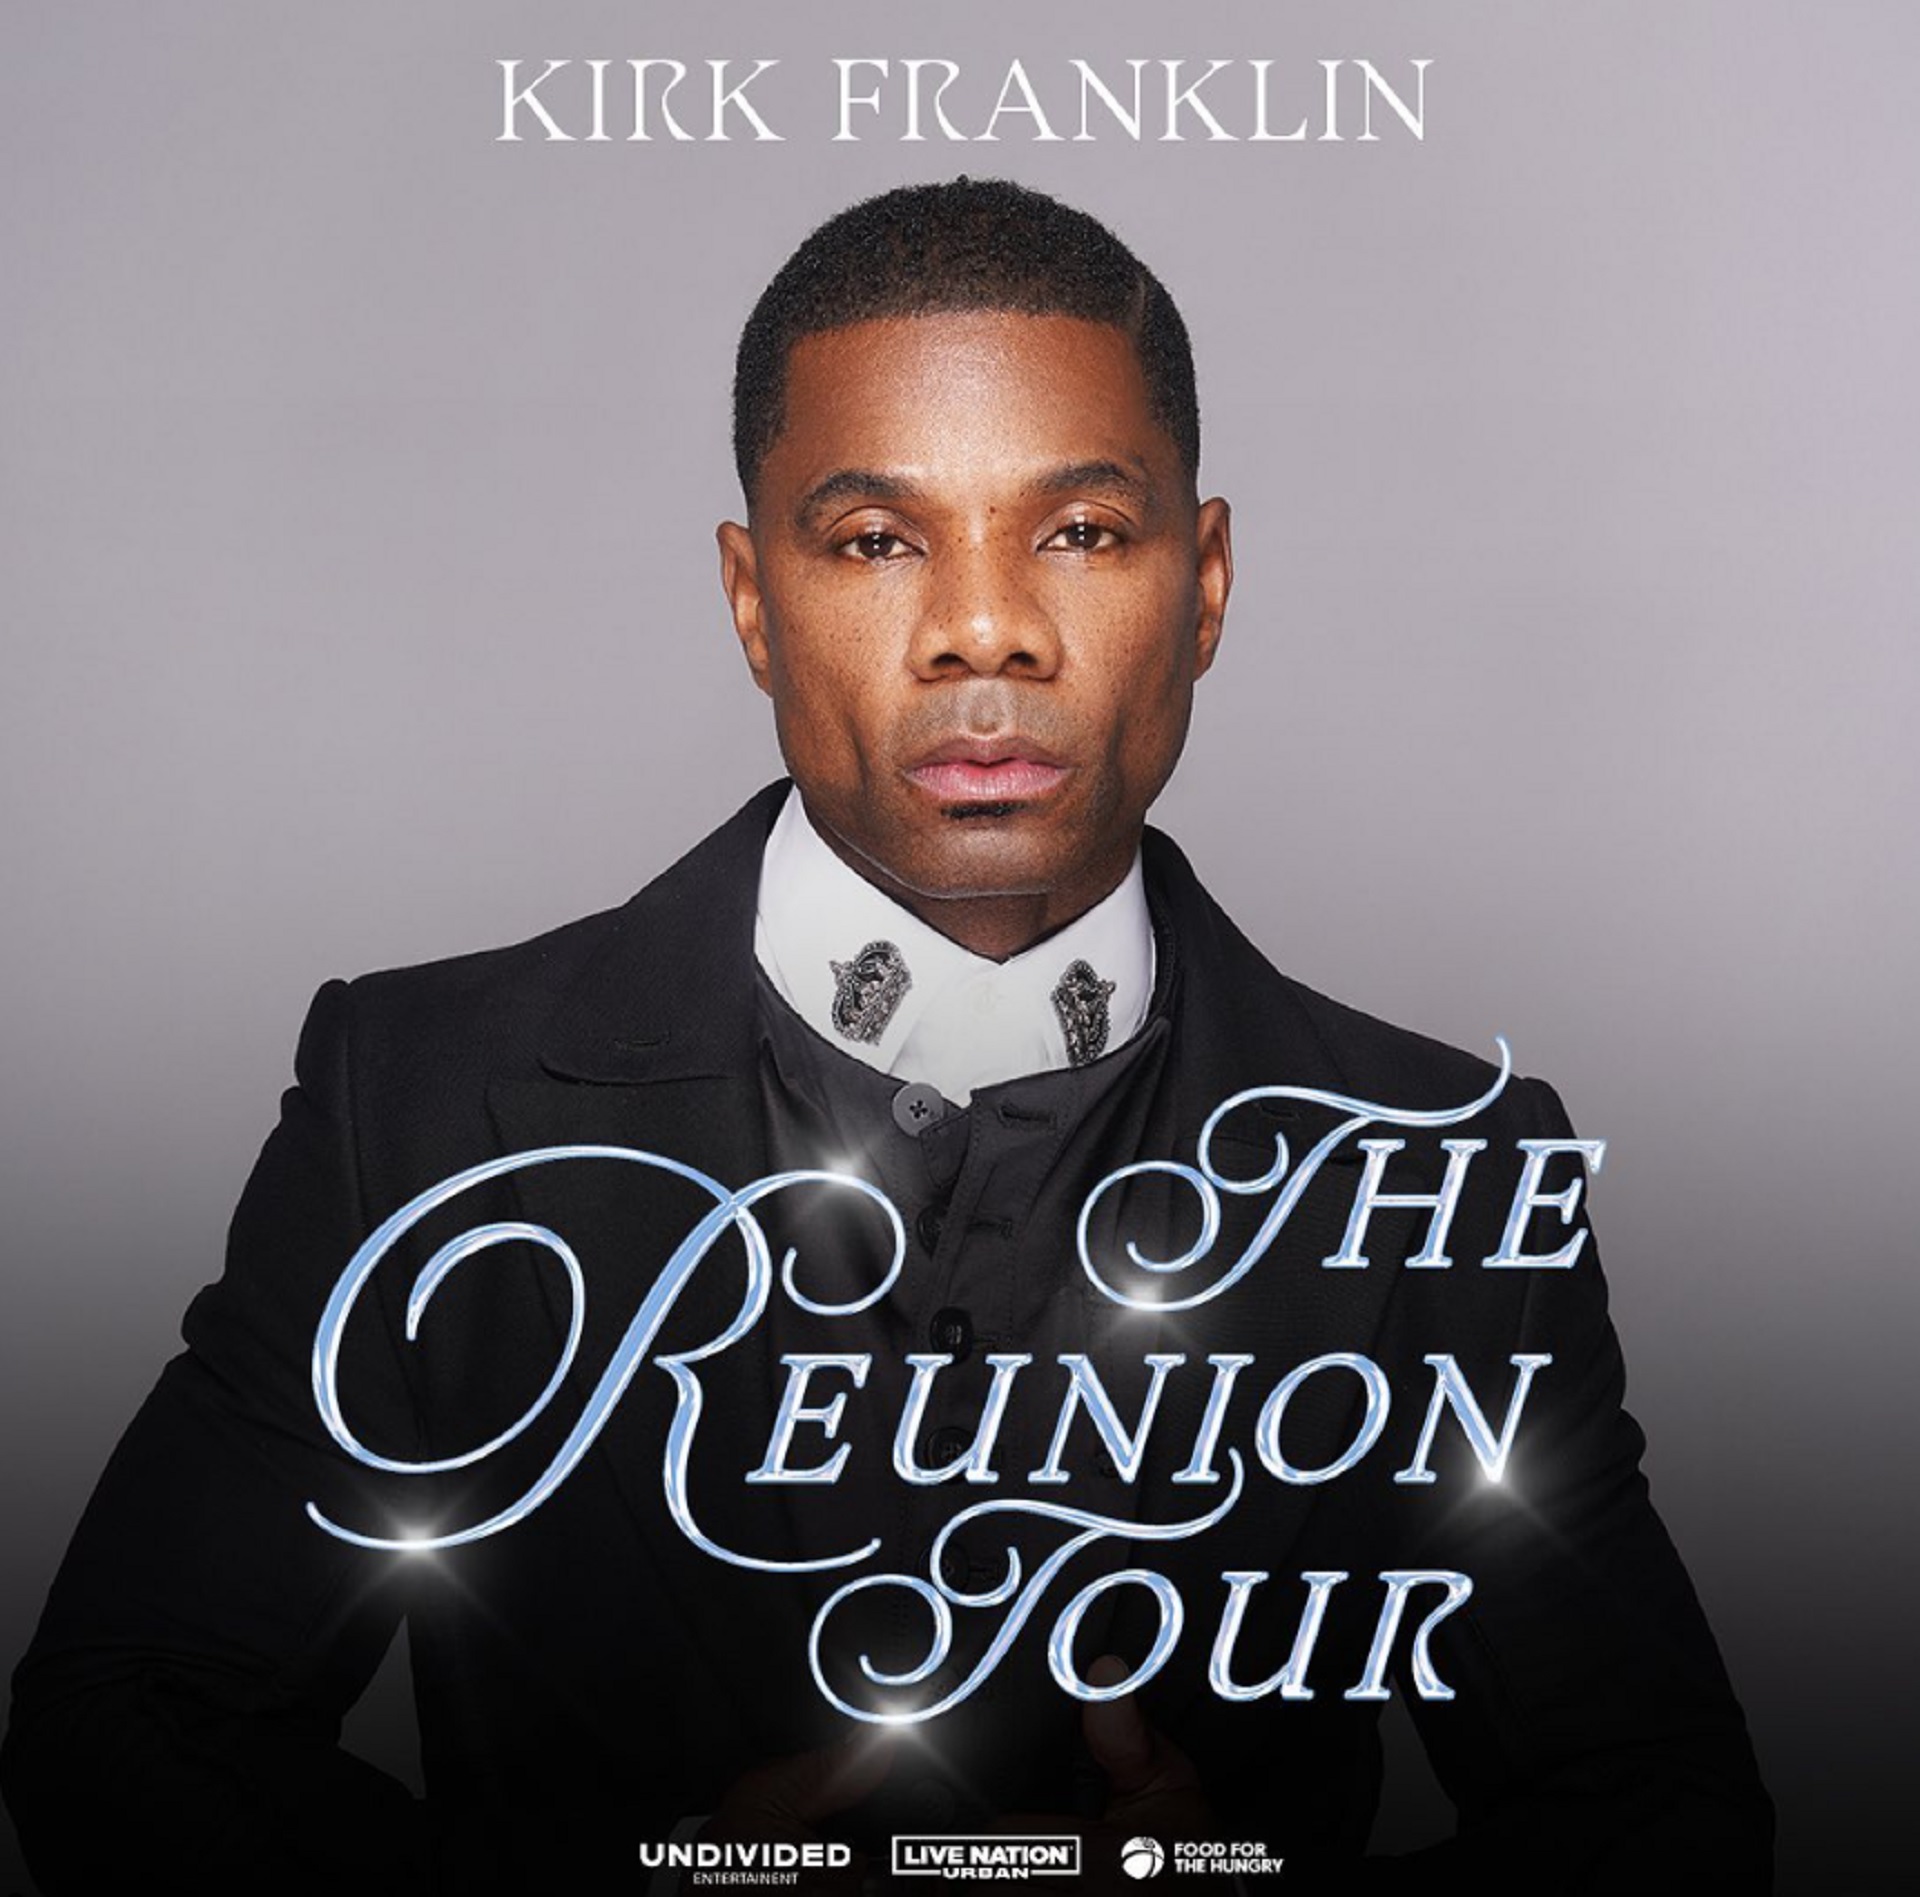 kirk franklin reunion tour philadelphia